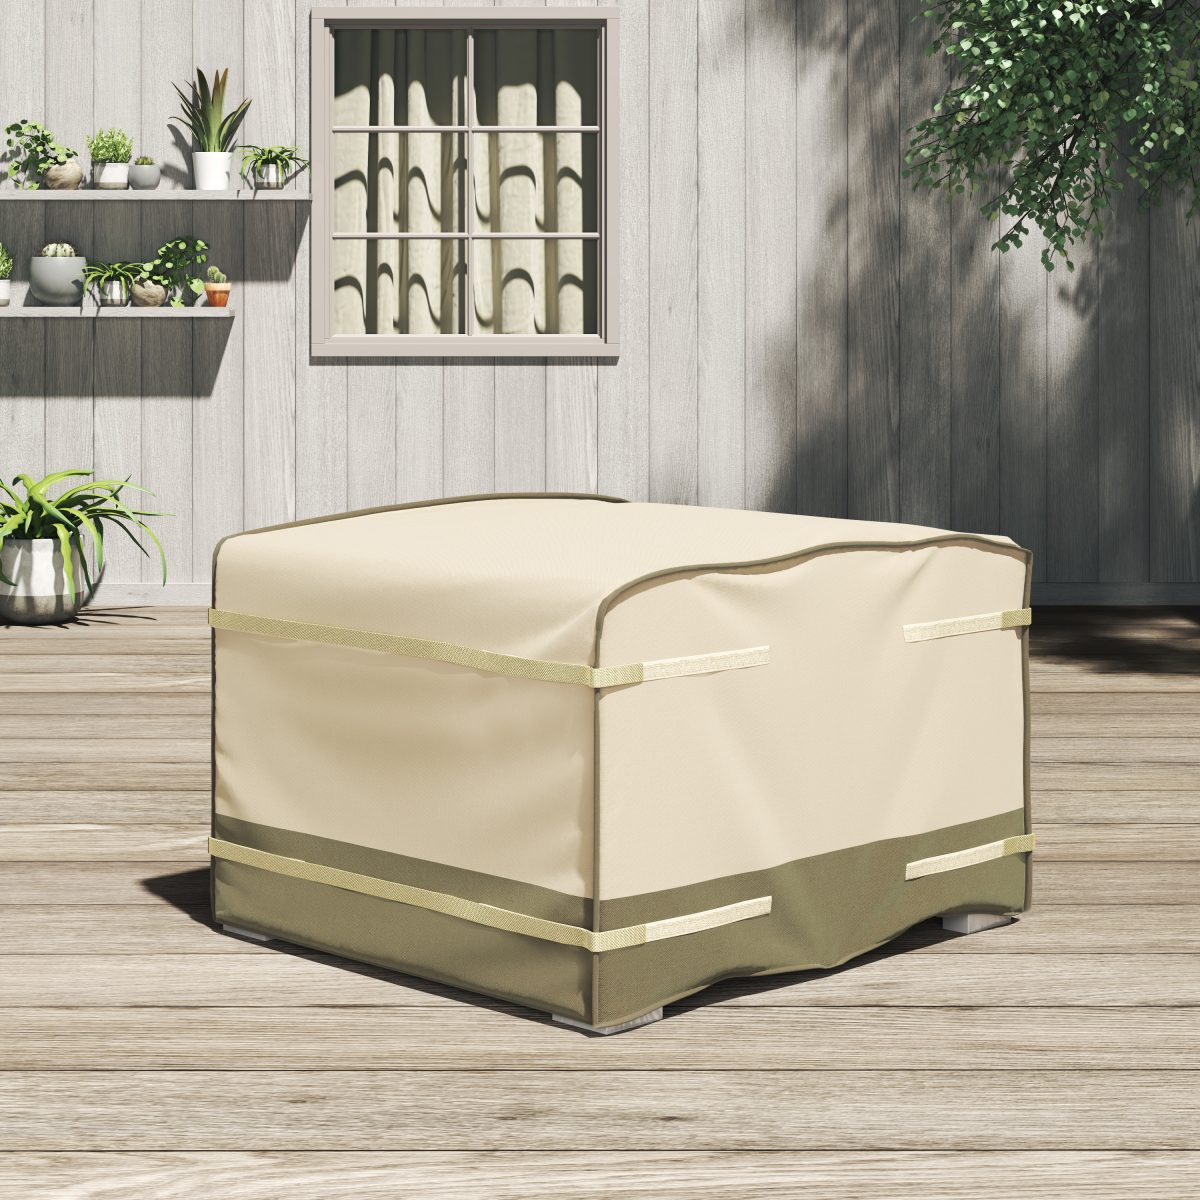 Sirio 42" x 42" Multi-purpose Cover for Outdoor Furniture